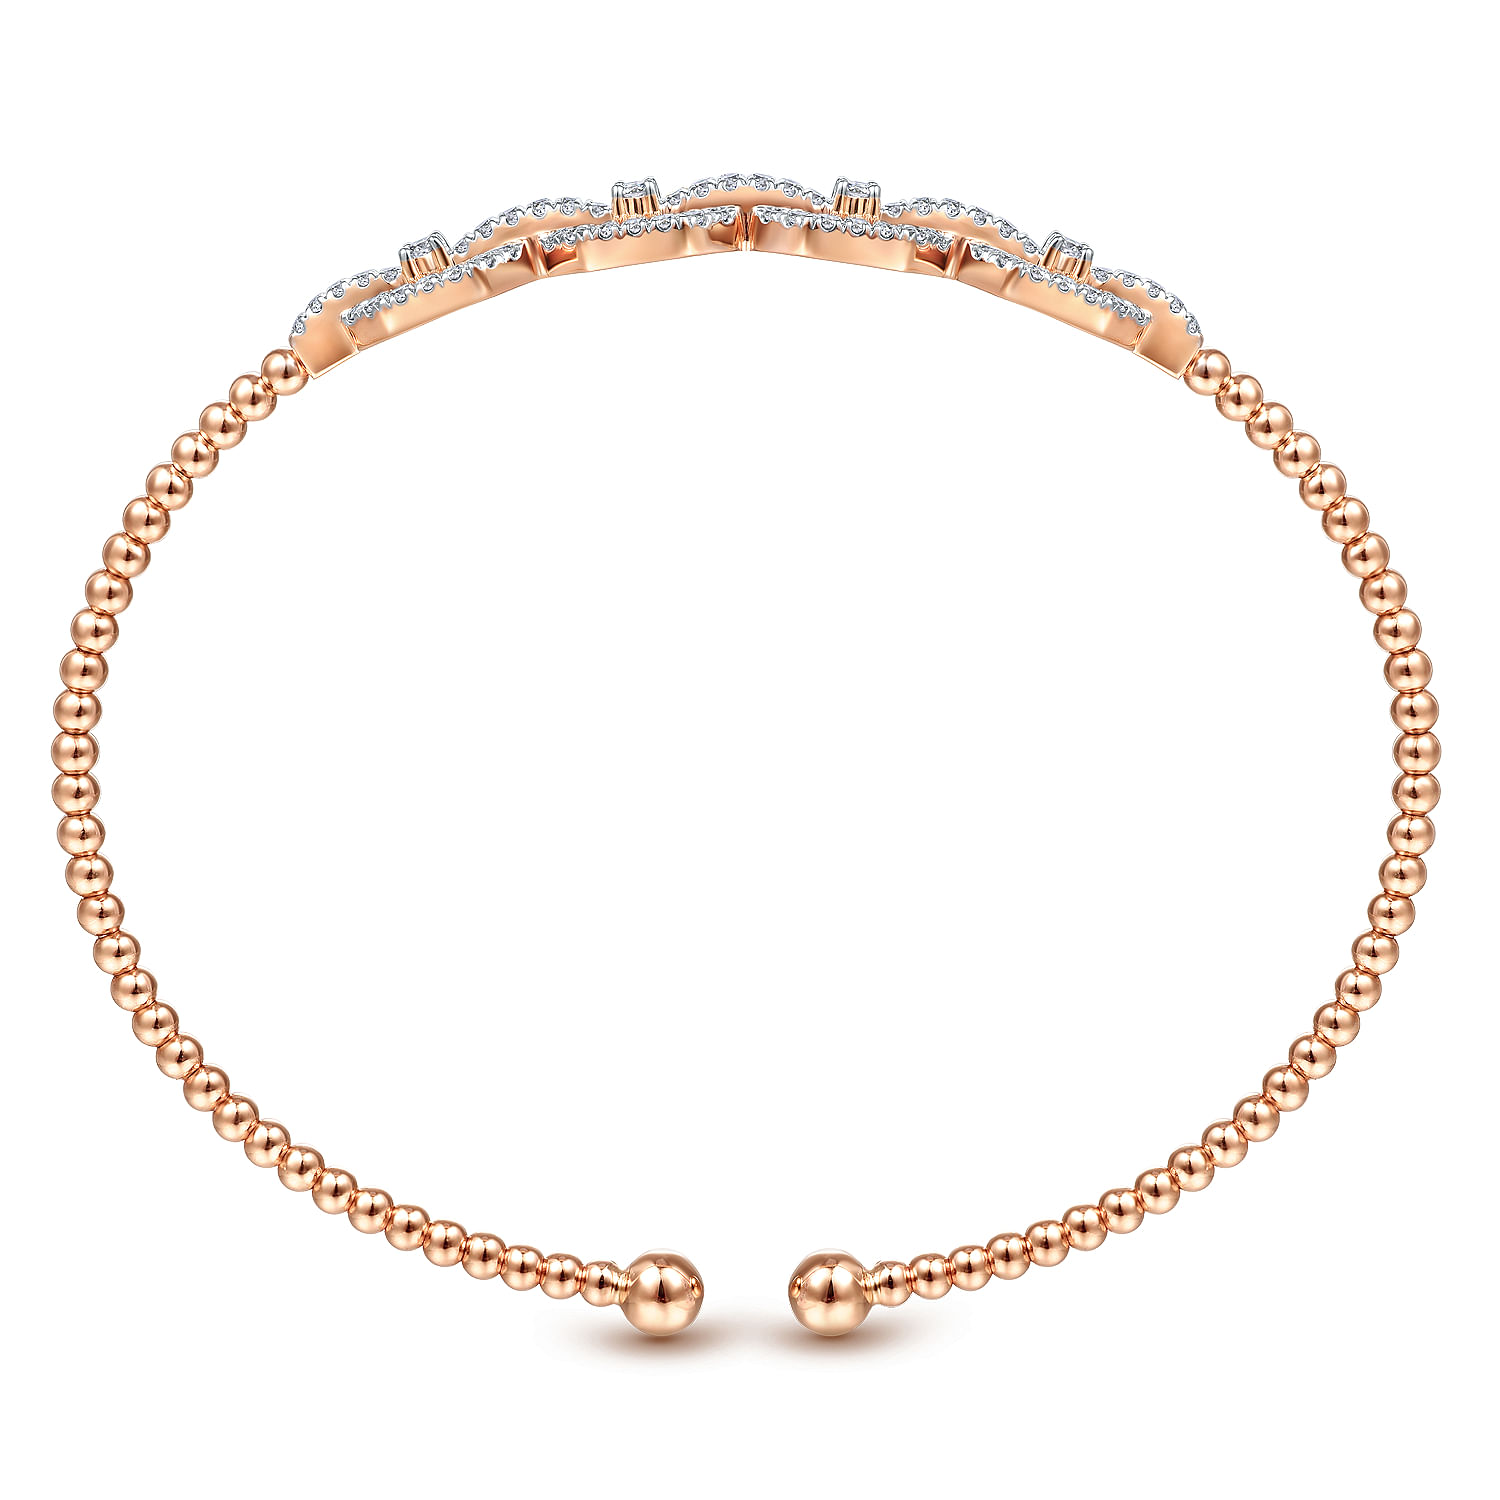 14K Rose Gold Bujukan Bead Cuff Bracelet with Diamond Pavé Links